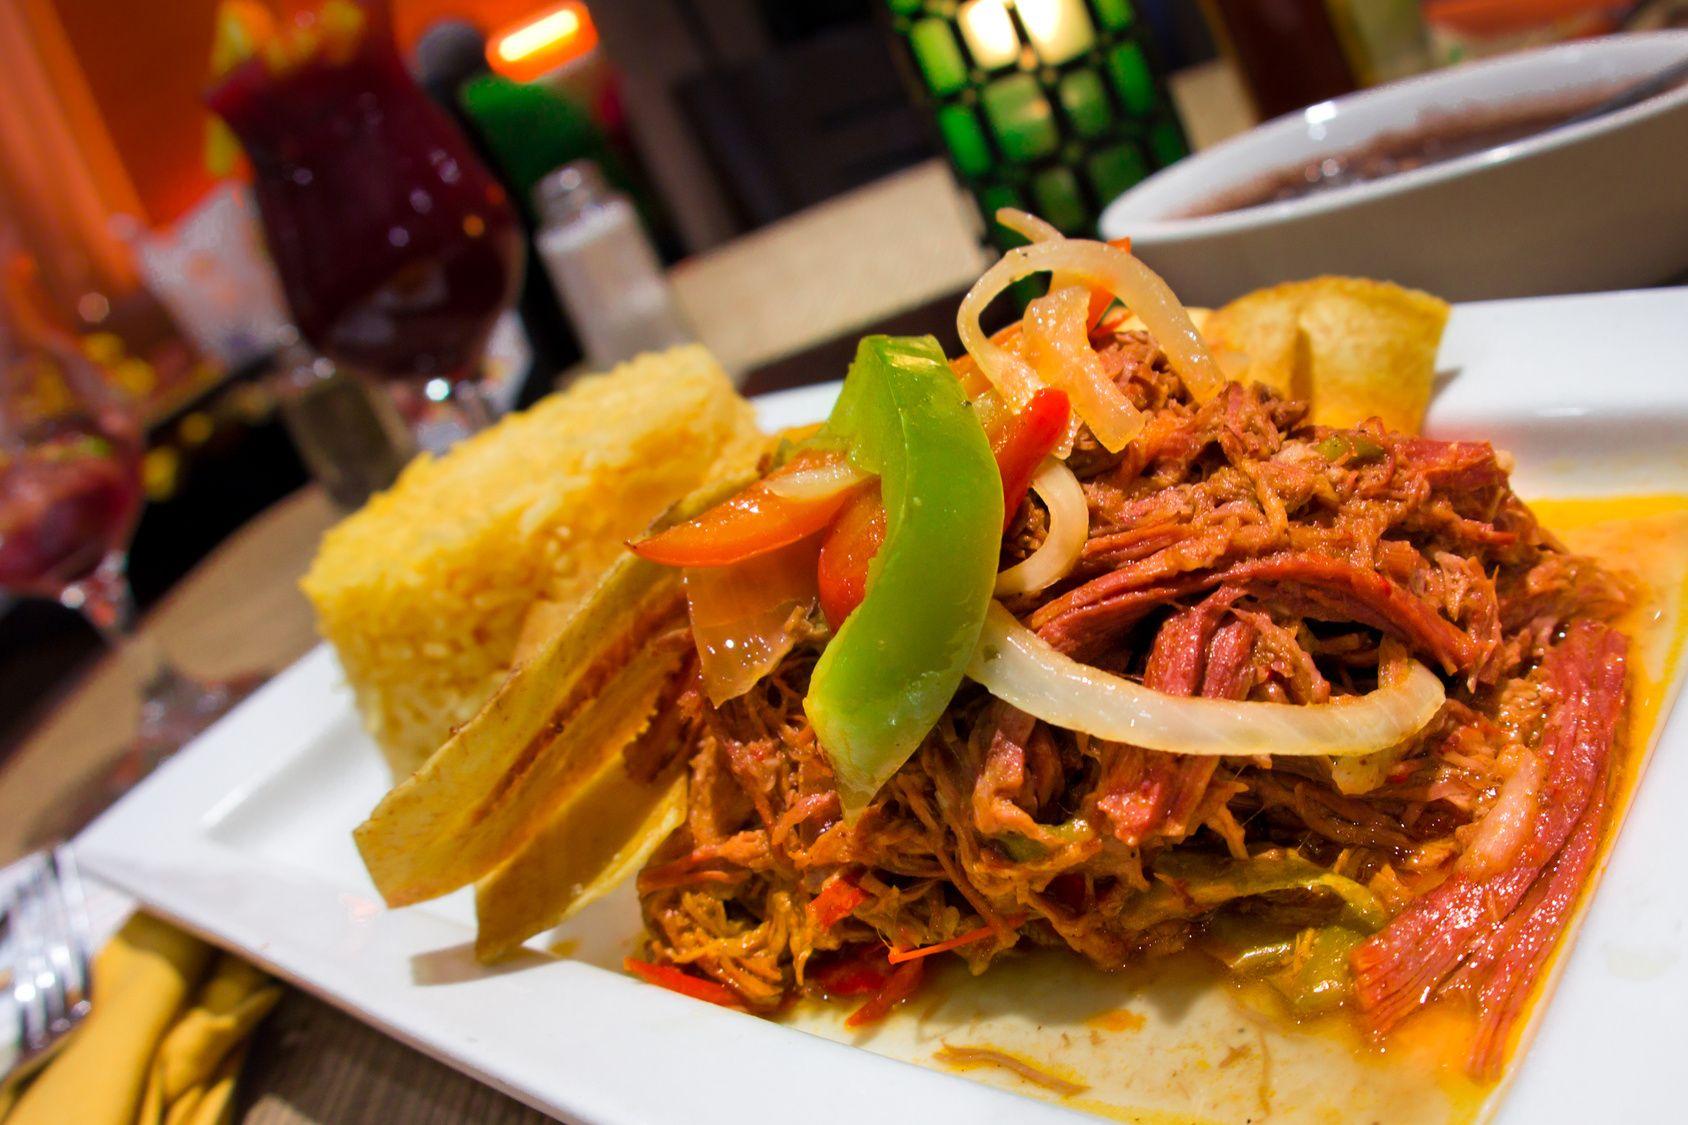 Welcome to Cafe Berlin - Puerto Rican Cuisine, Vegetarian